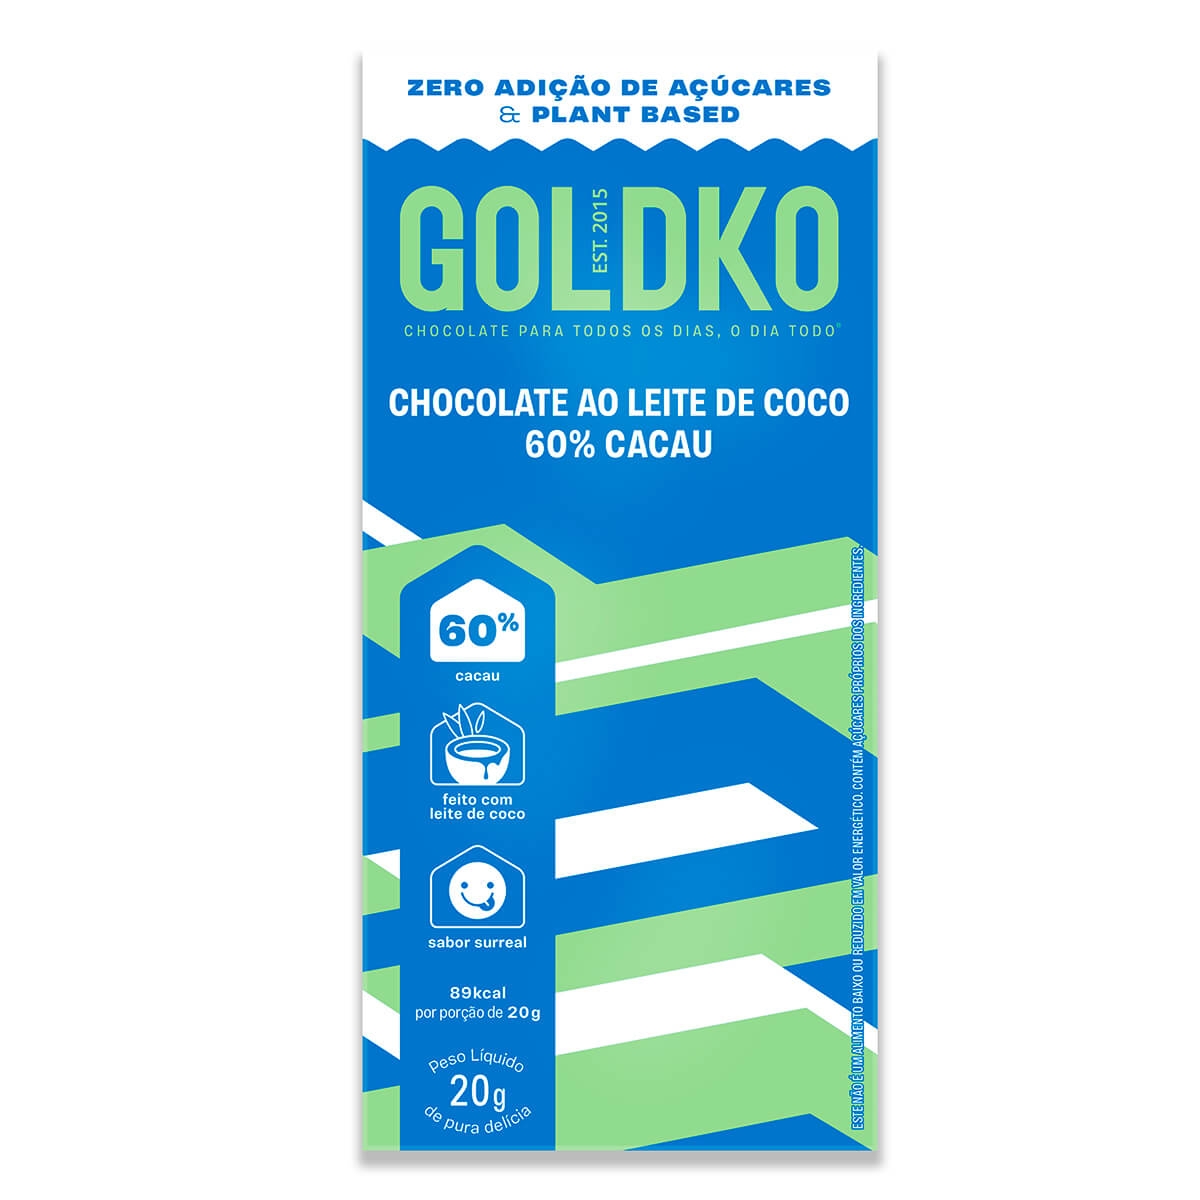 CHOCOLATE AO LEITE DE COCO GOLD&KO 60% CACAU